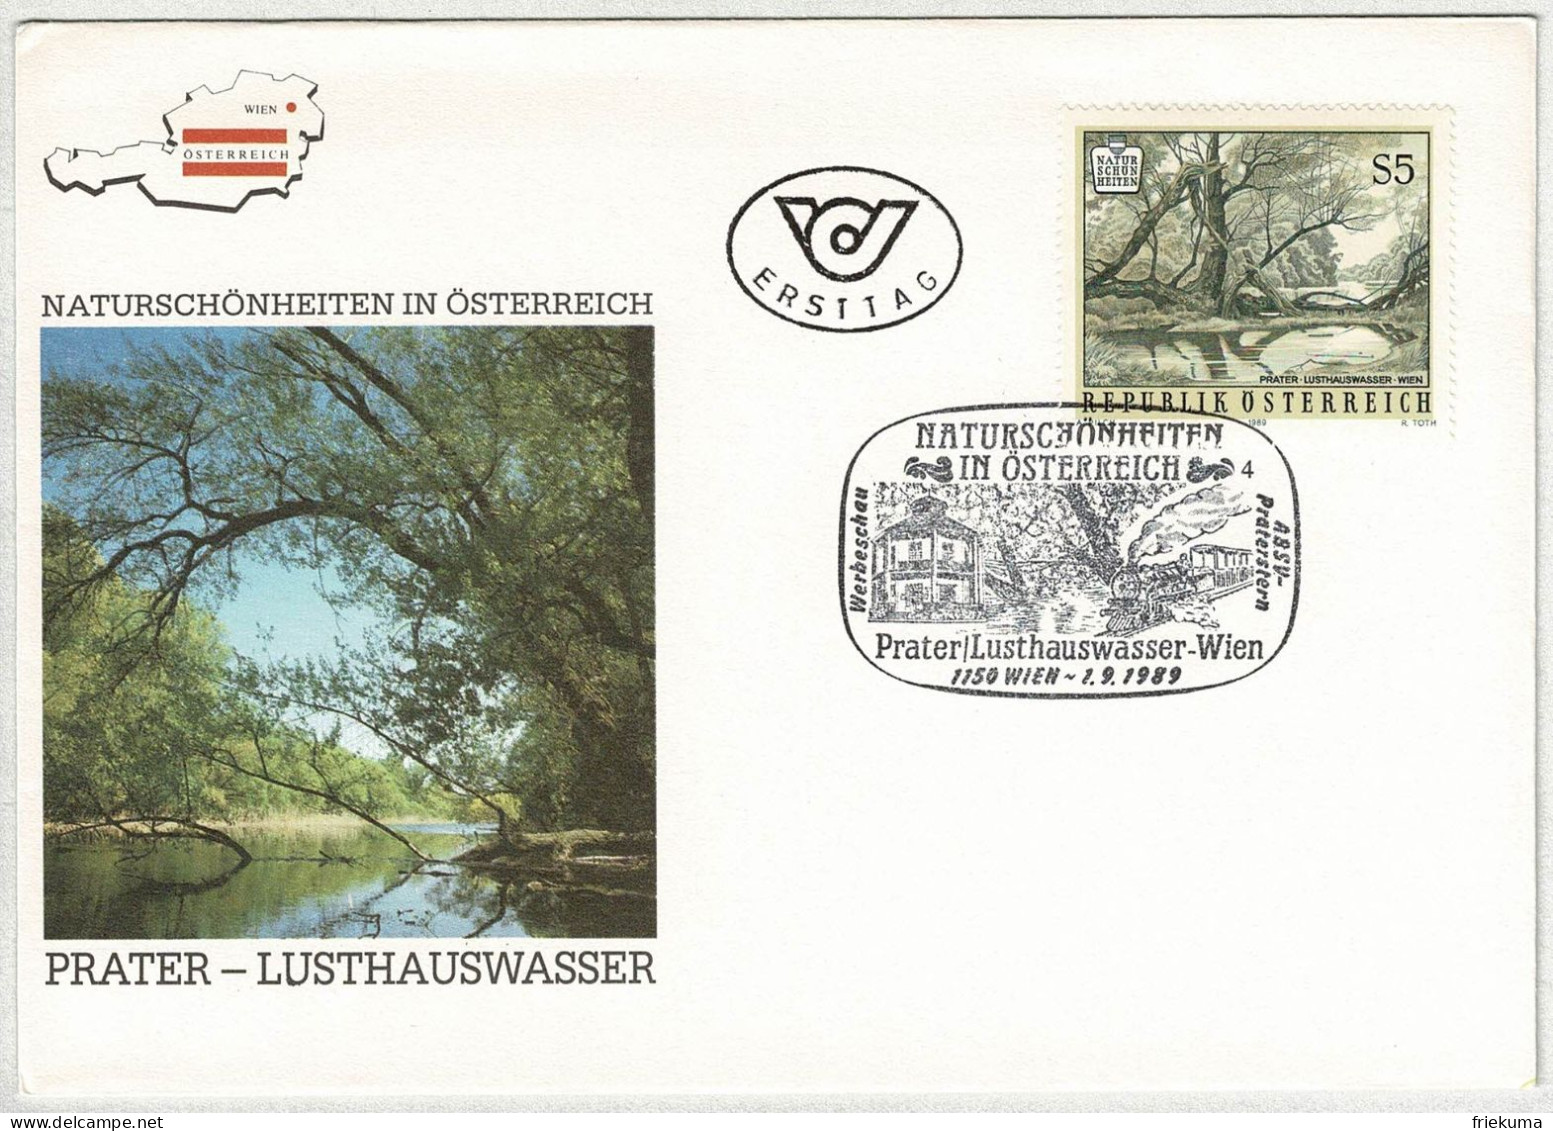 Oesterreich / Austria 1989, FDC Naturschönheiten Prater Lusthauswasser Wien, Eisenbahn / Railway - Environment & Climate Protection